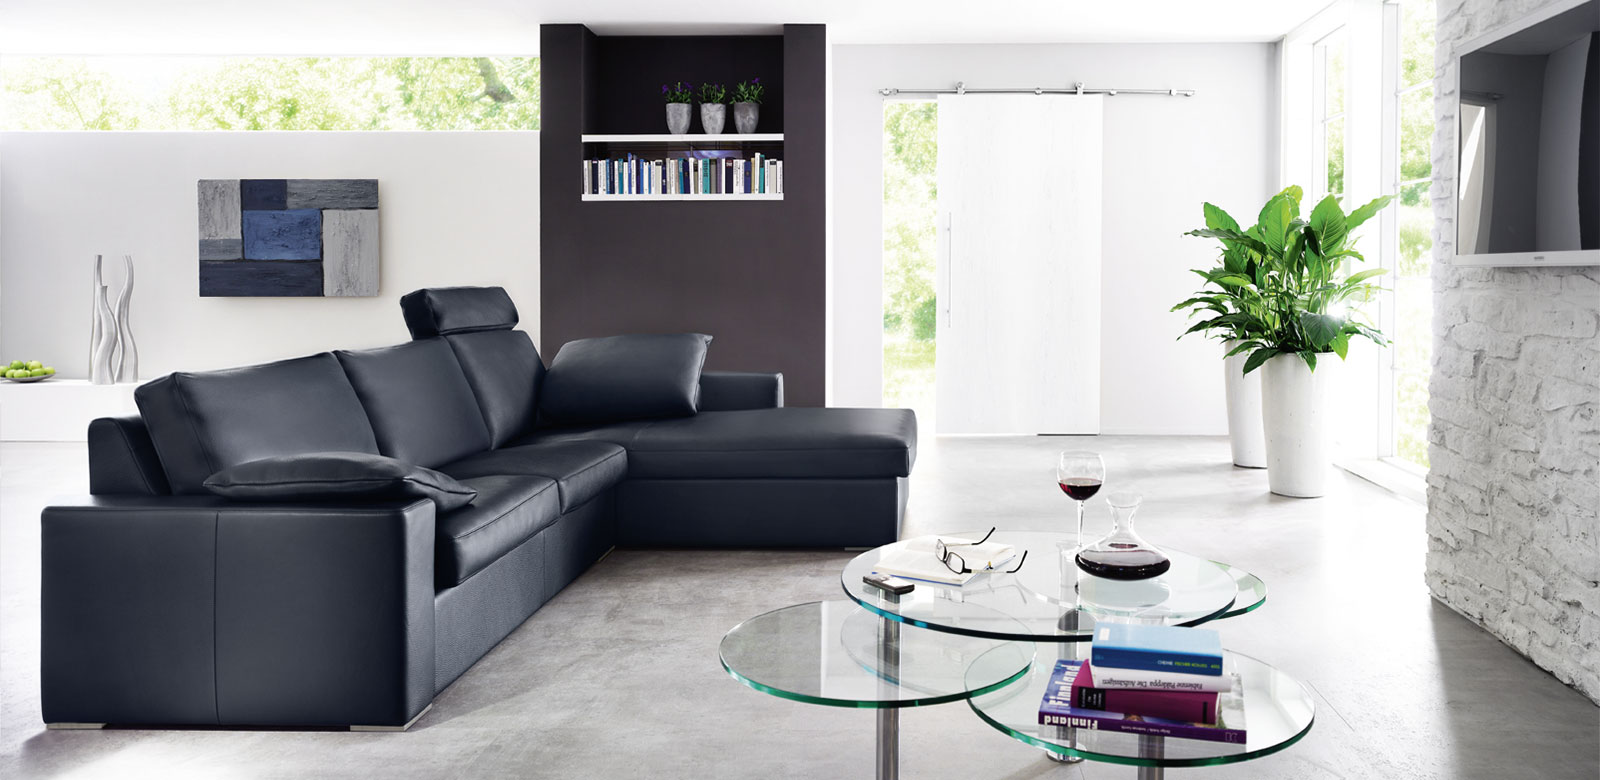 Seitenansicht CL150 in schwarzem Leder als Longchair-Kombination mit Kissen und Kopfstützen in modernem Wohnzimmer mit Glastischen.